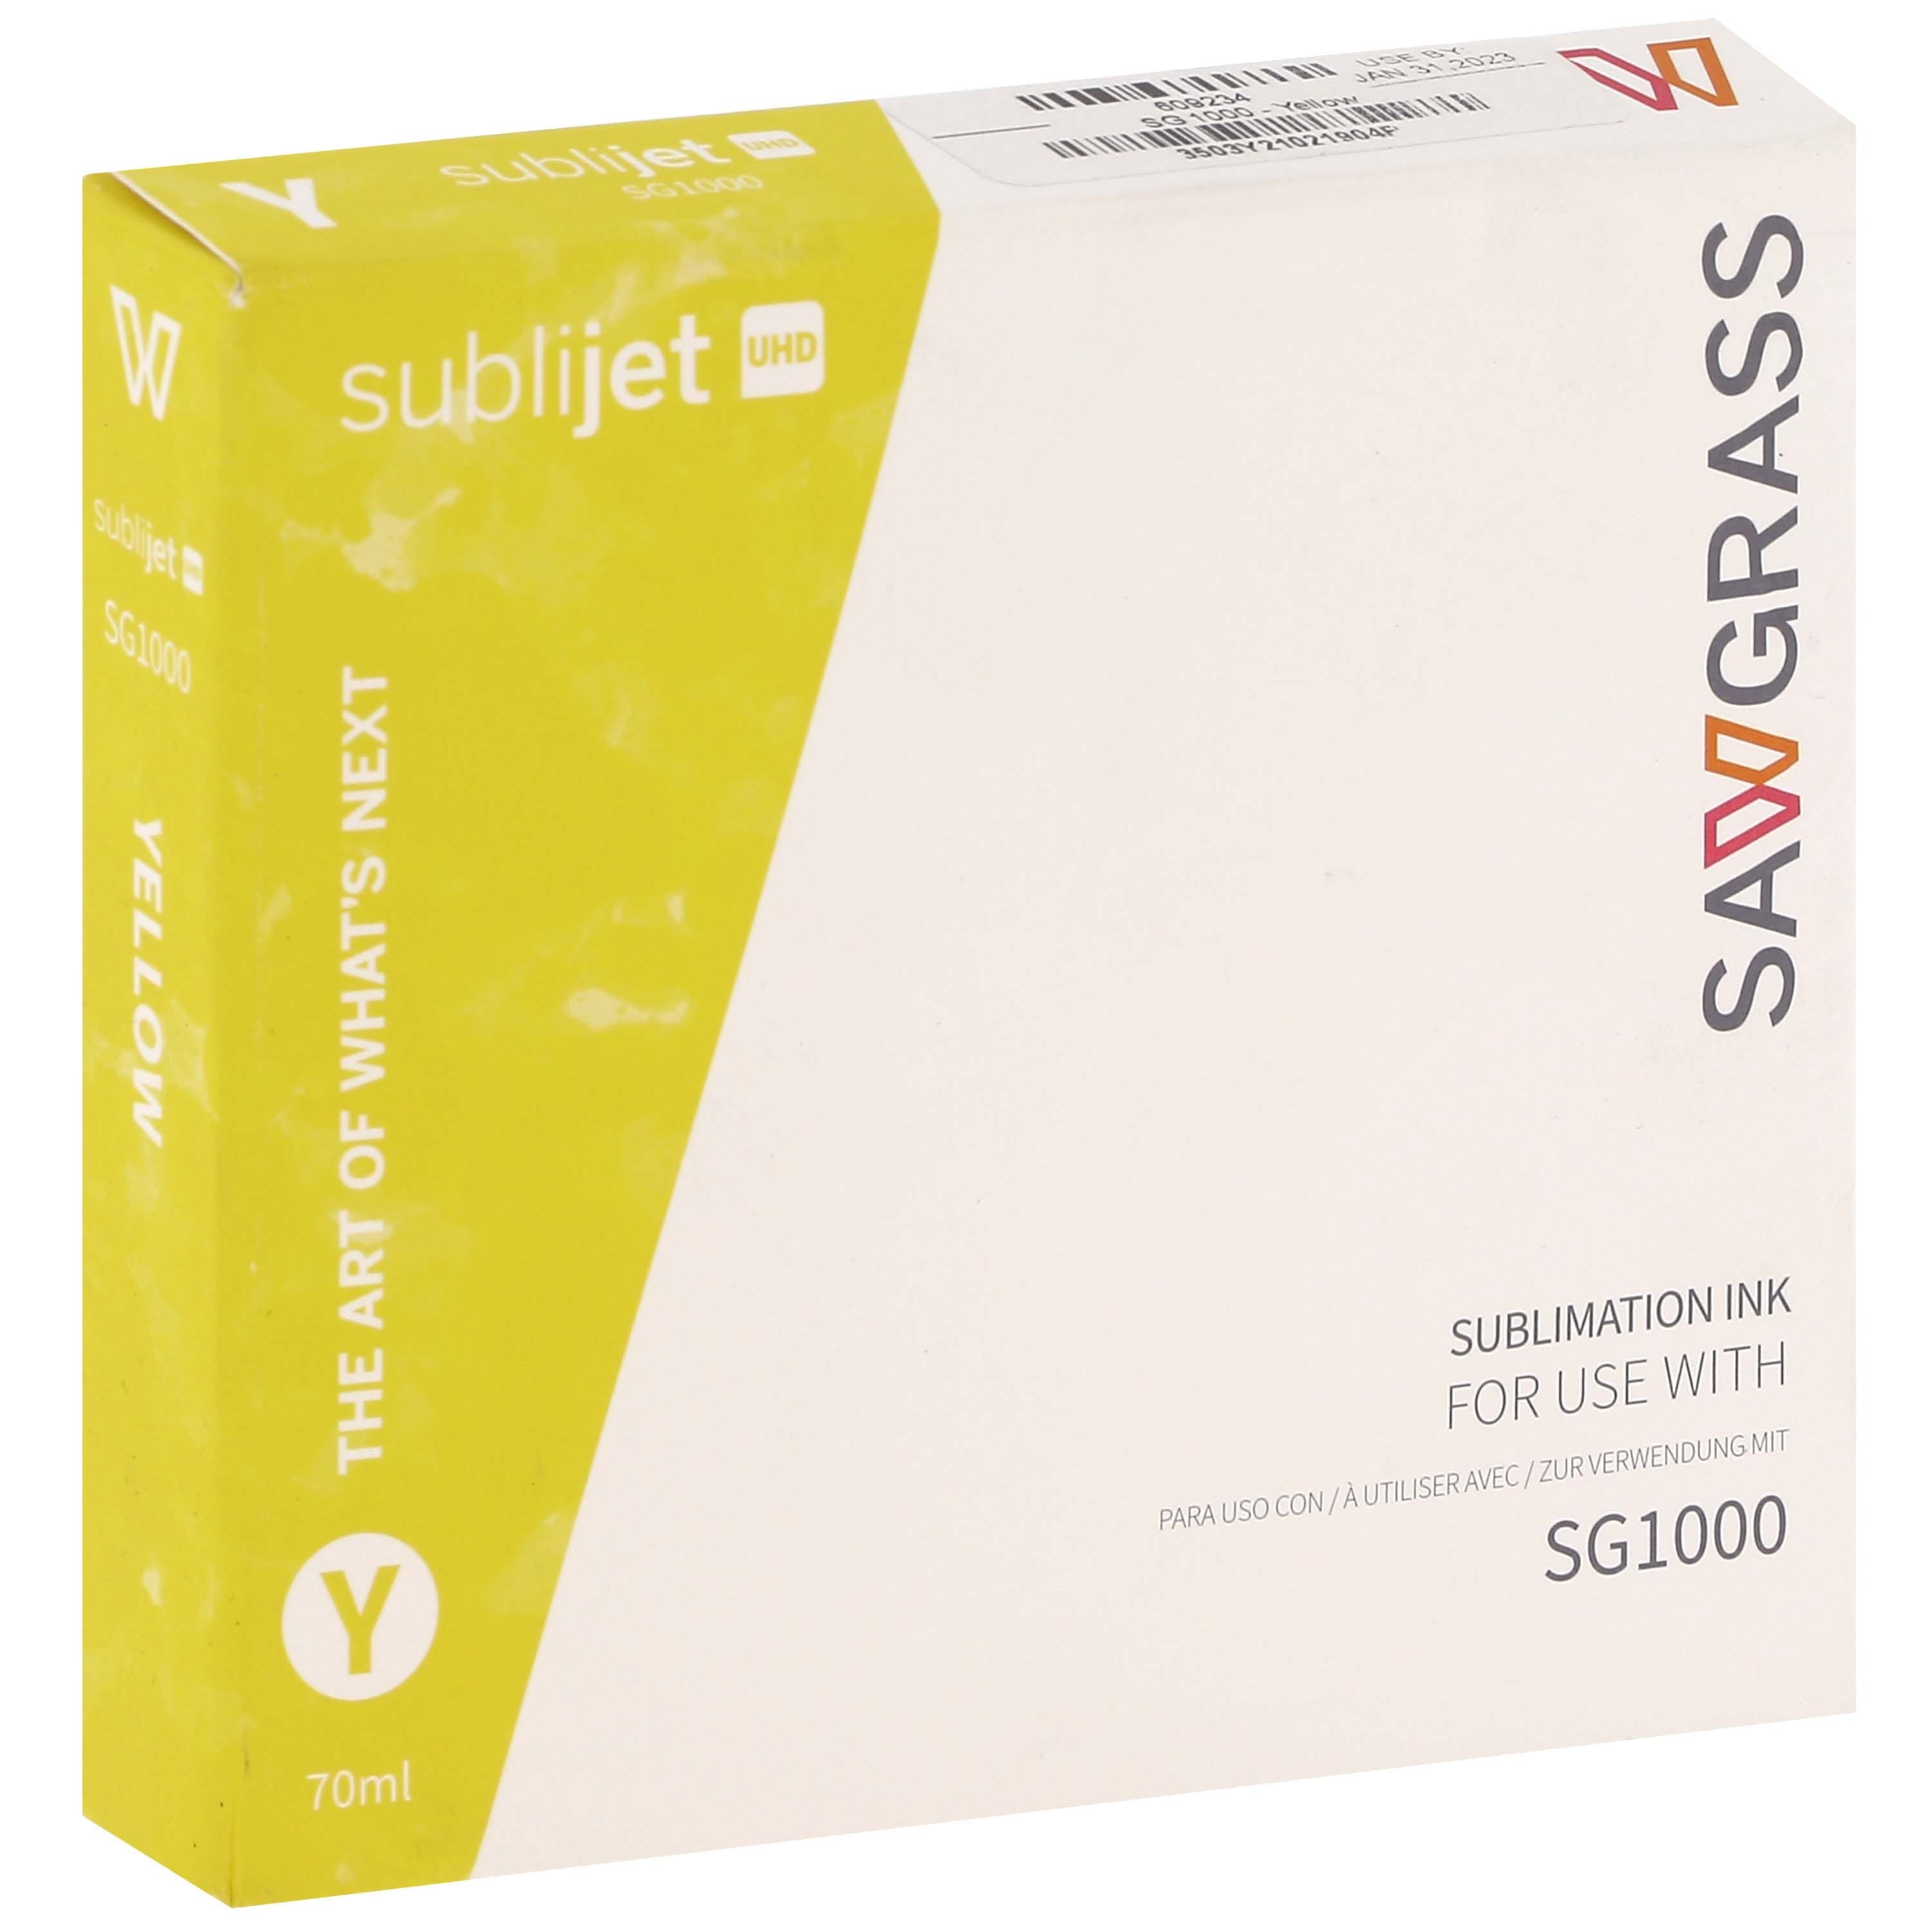 SAWGRASS - Encre sublimation SubliJet-UHD - Jaune 70ml - pour Sawgrass SG1000